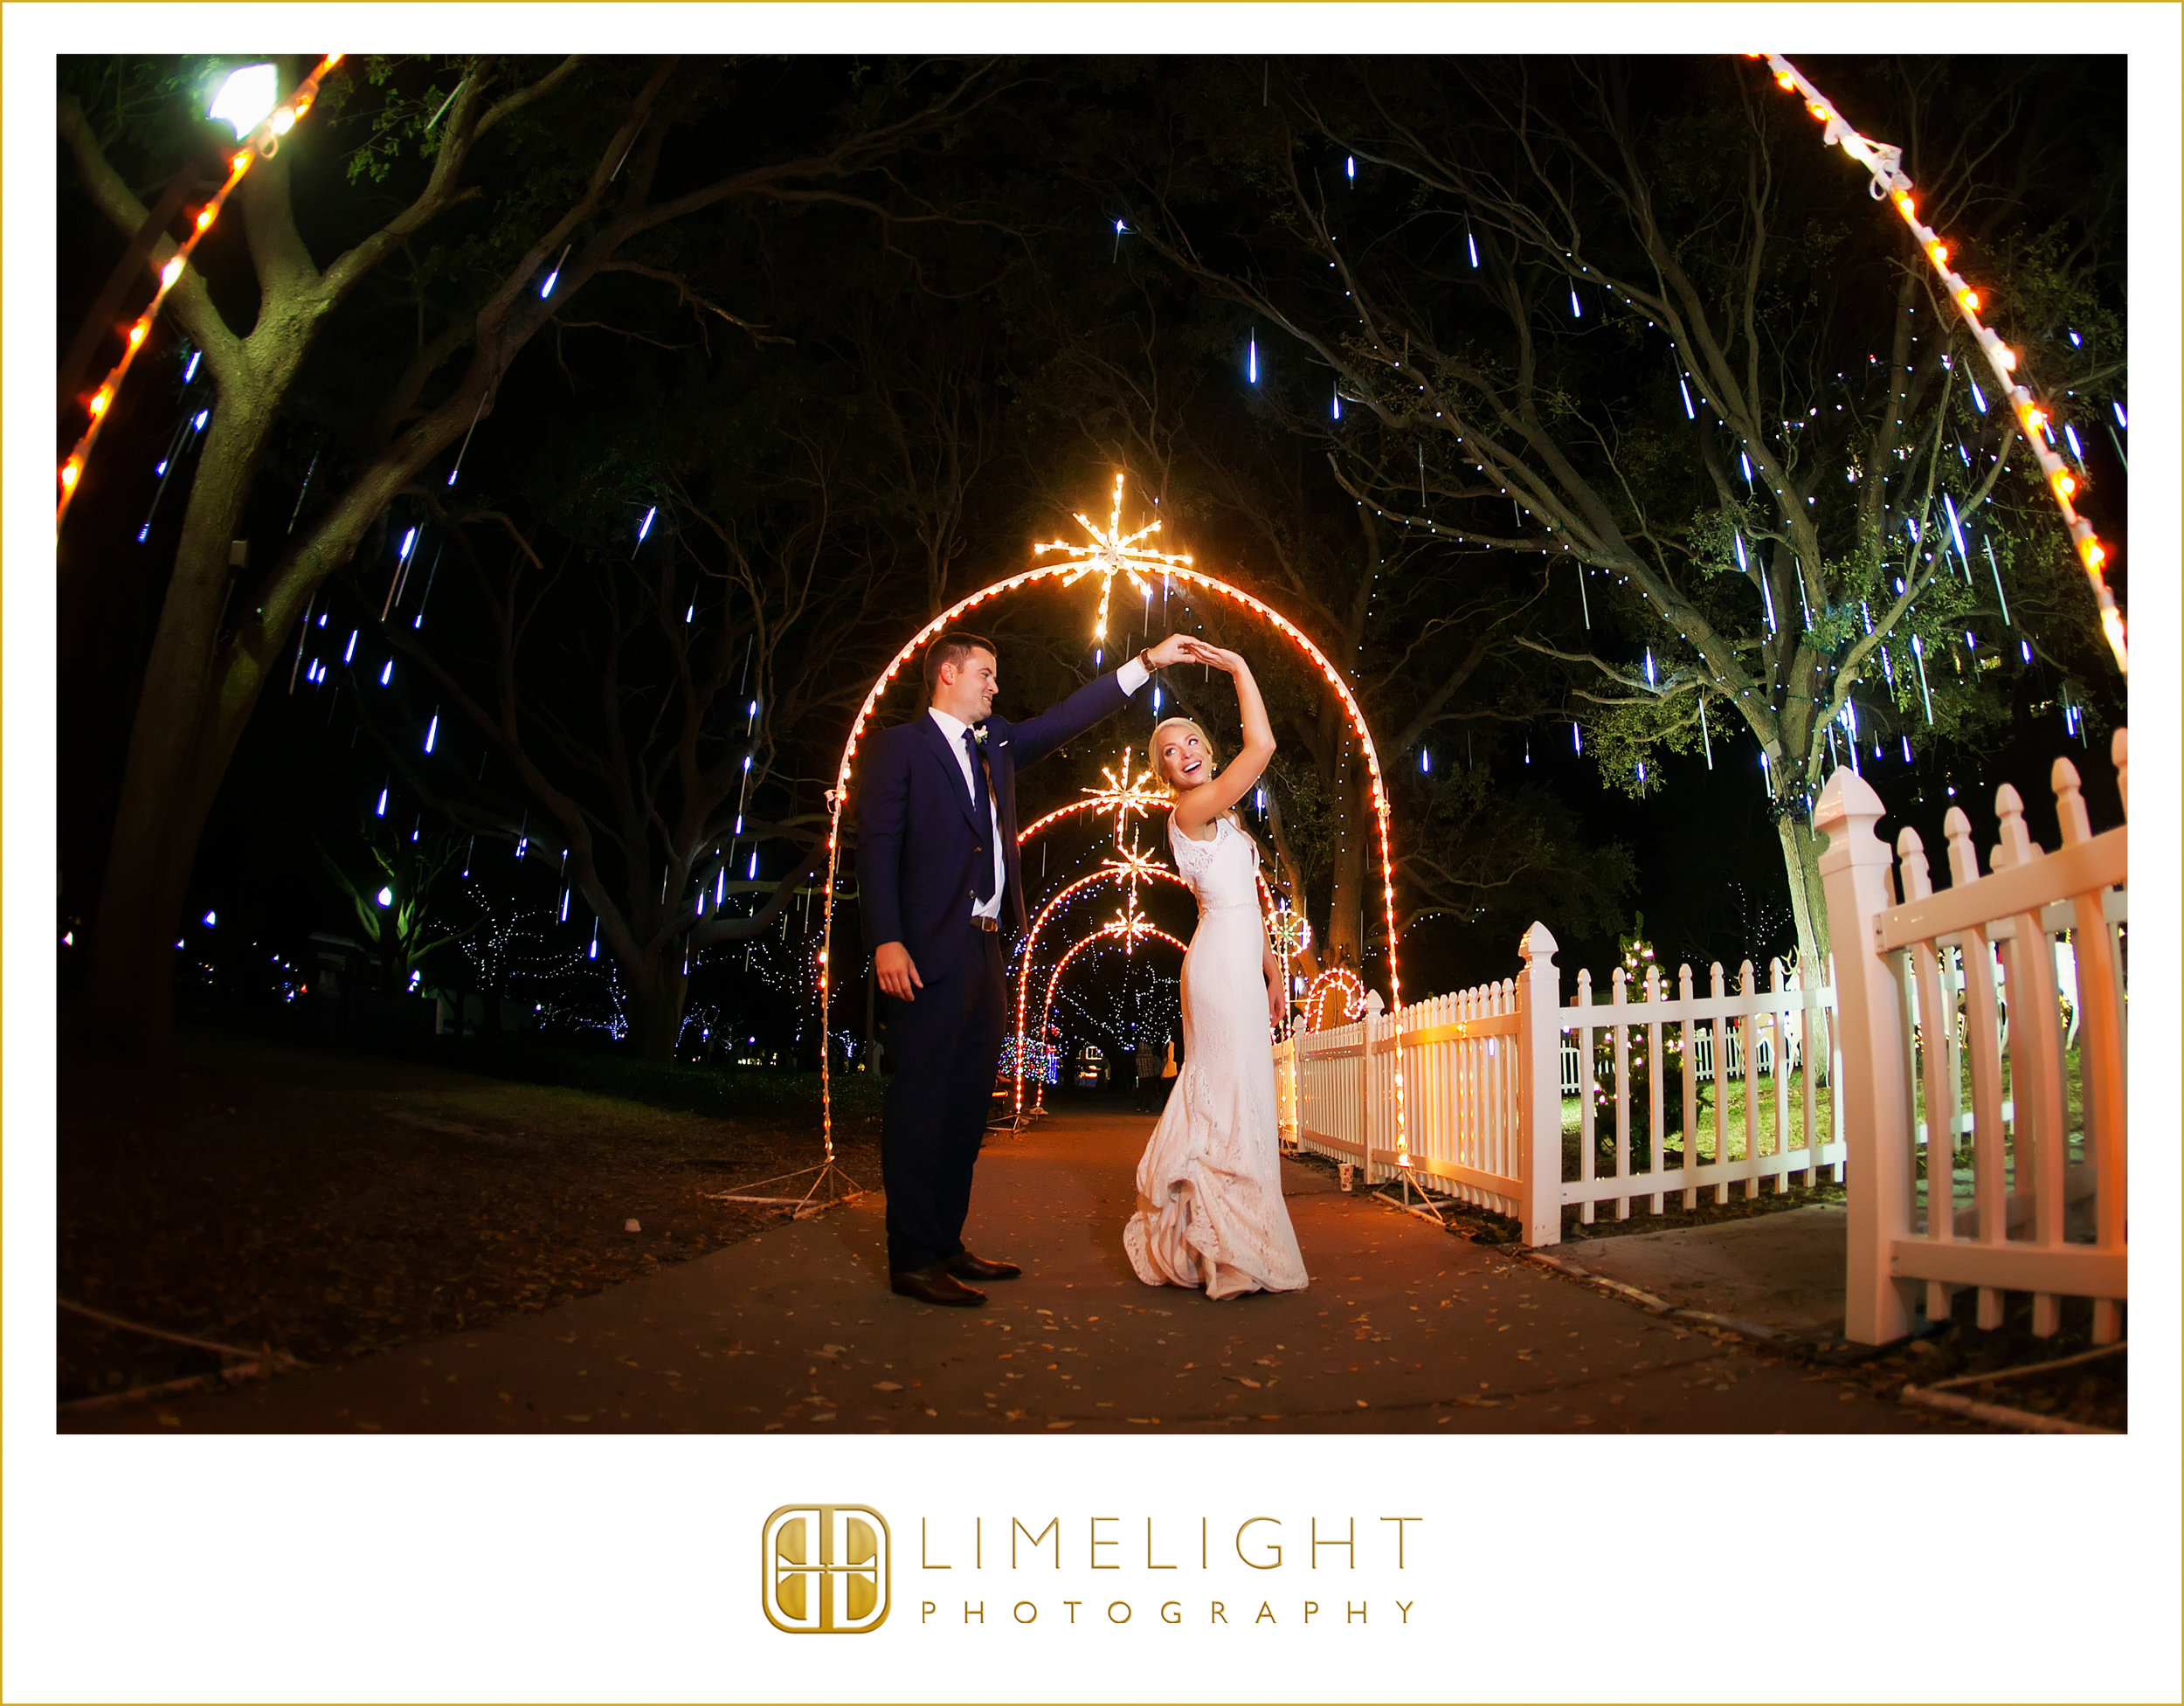 Lights | Details | Wedding